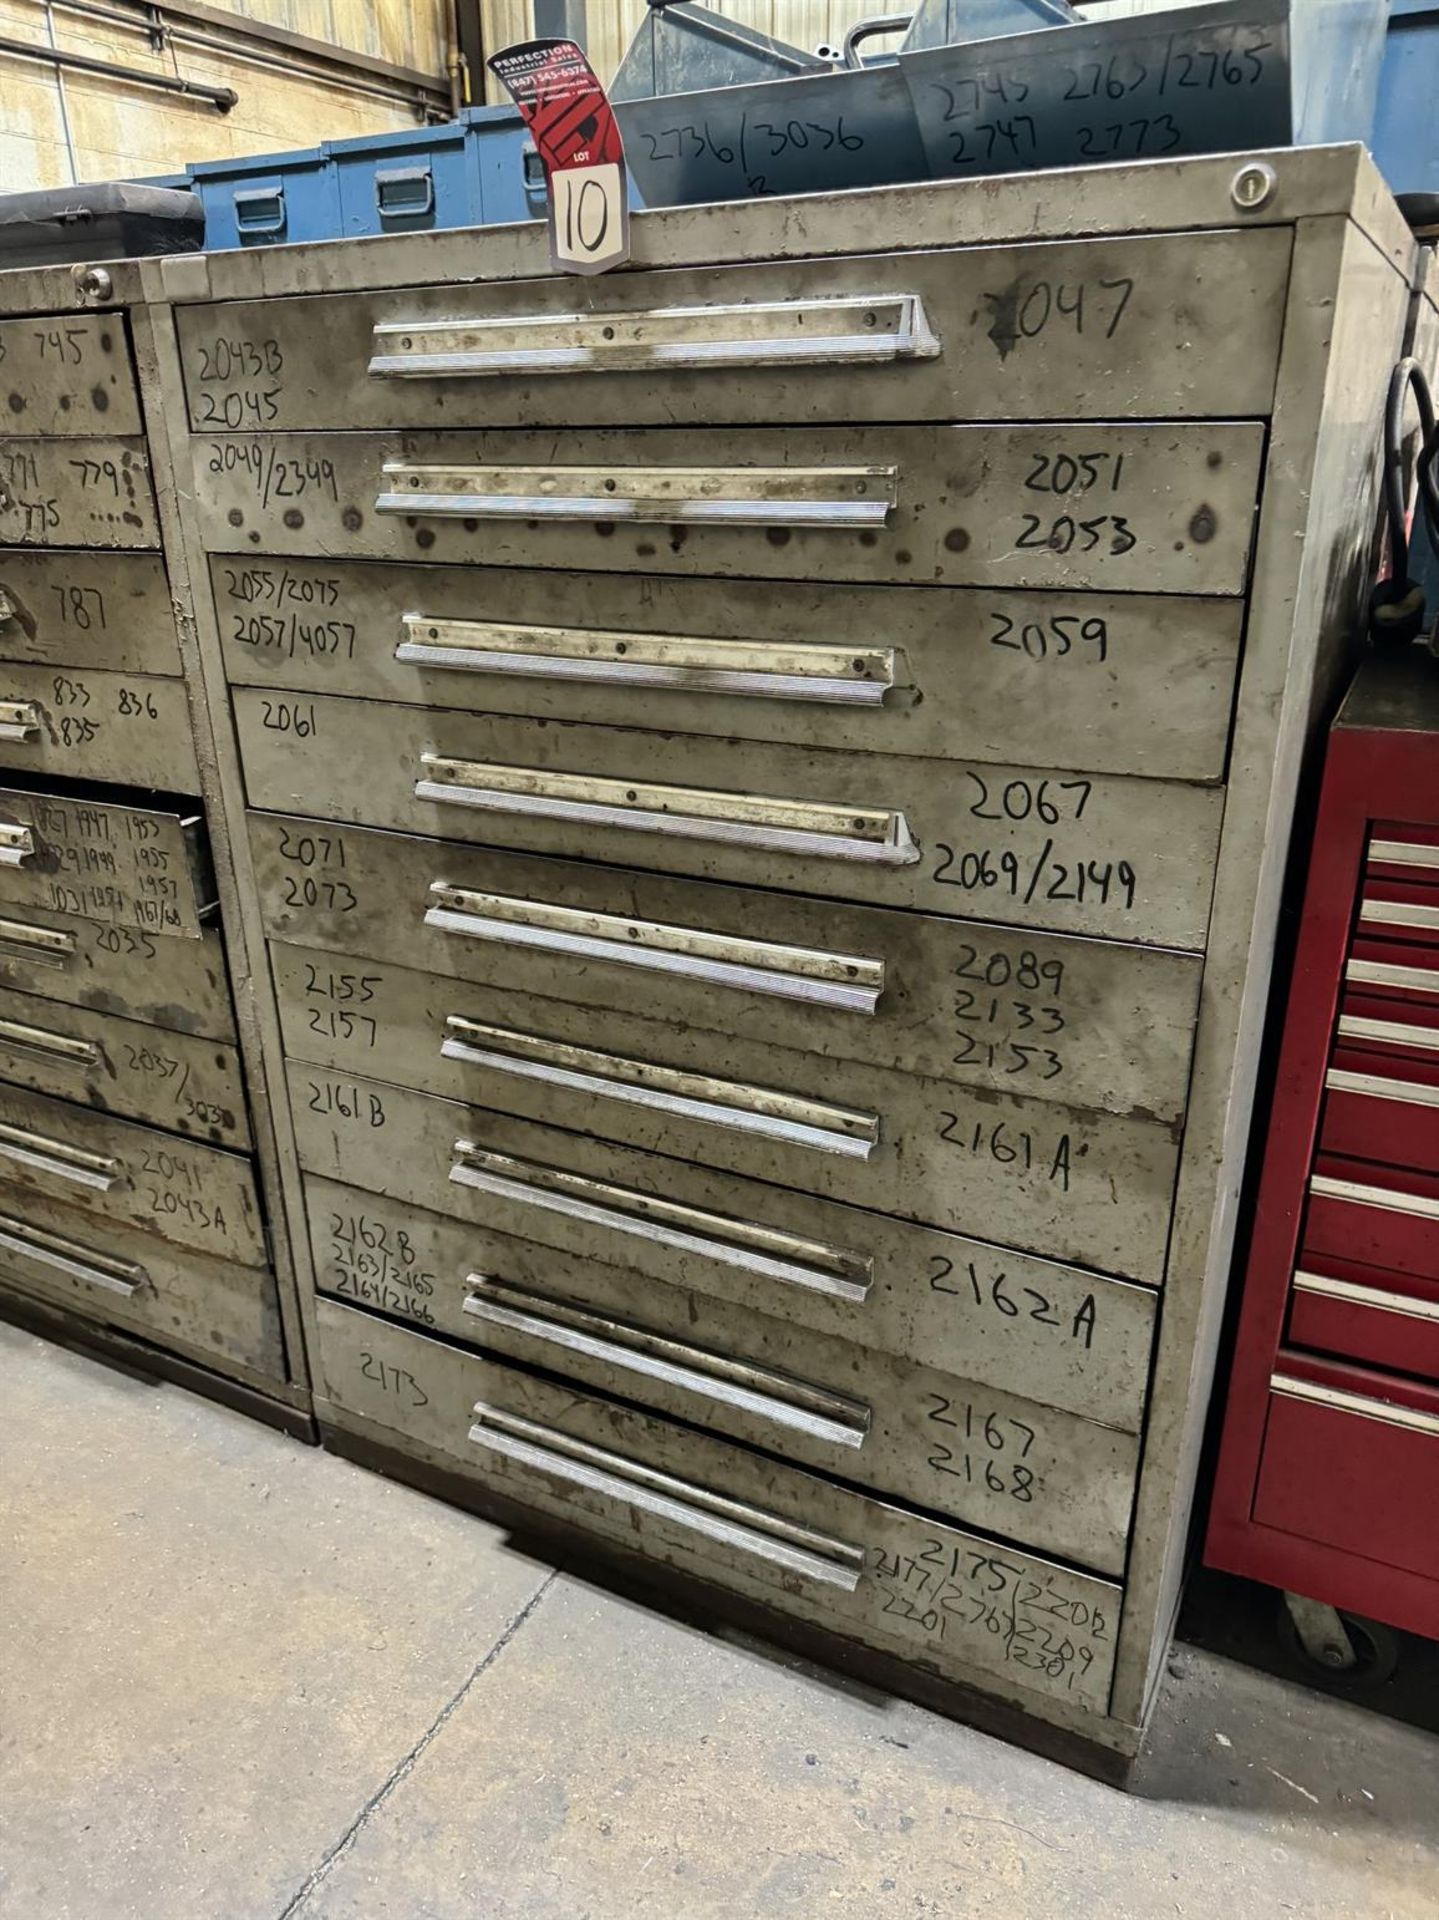 LYON 9-Drawer Modular Tooling Cabinet, 59"